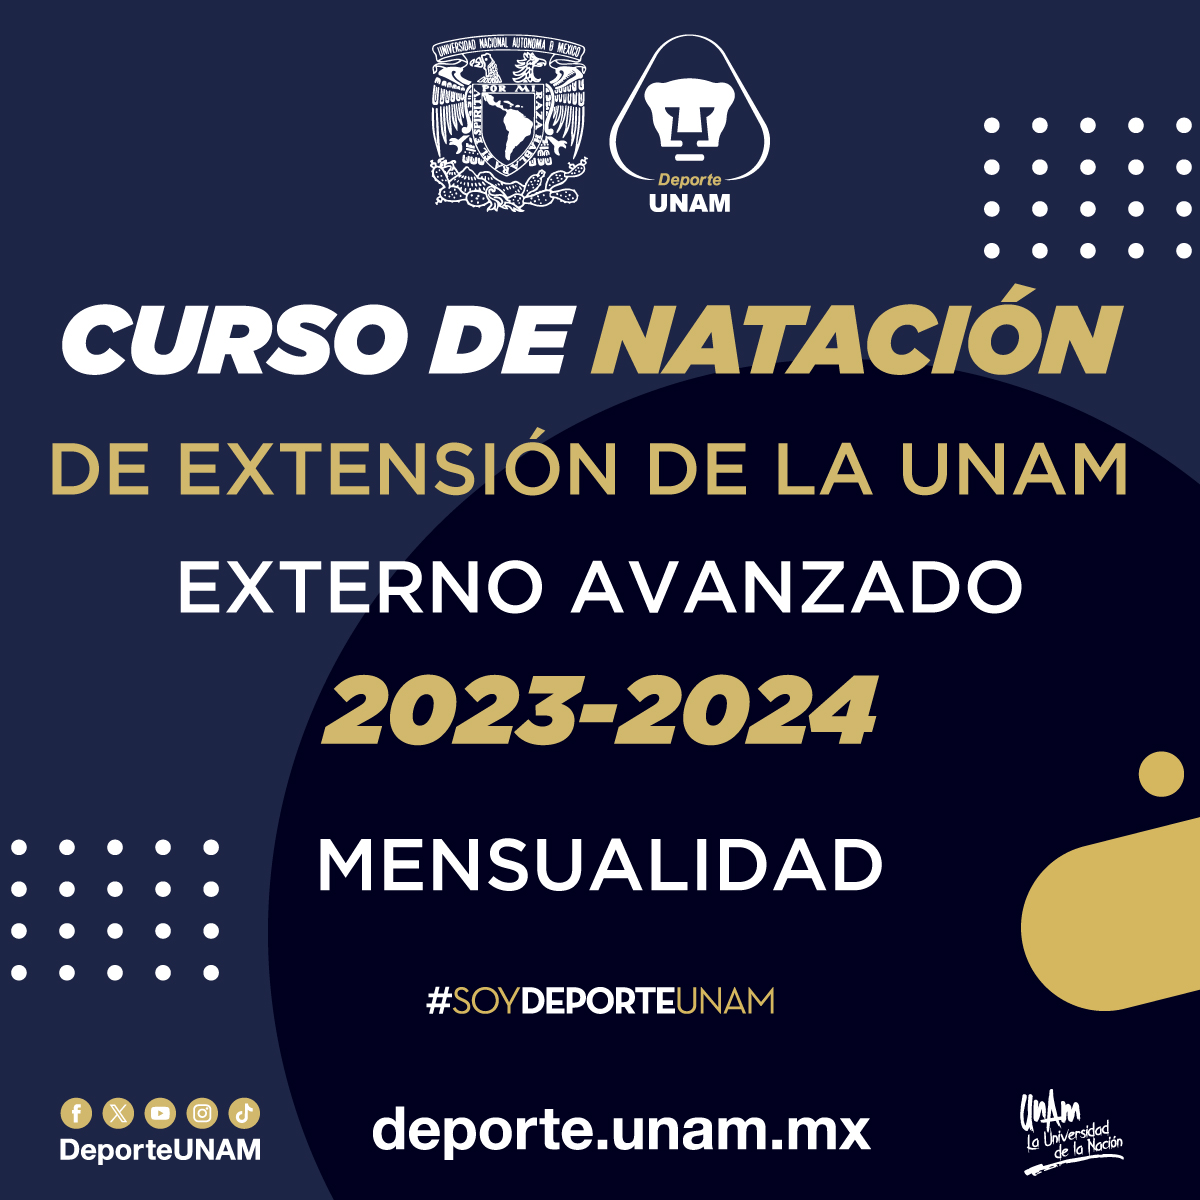 CURSO DE NATACIÓN DE EXTENSIÓN DE LA UNAM 2023 - 2024 EXTERNOS AVANZADOS MENSUALIDAD